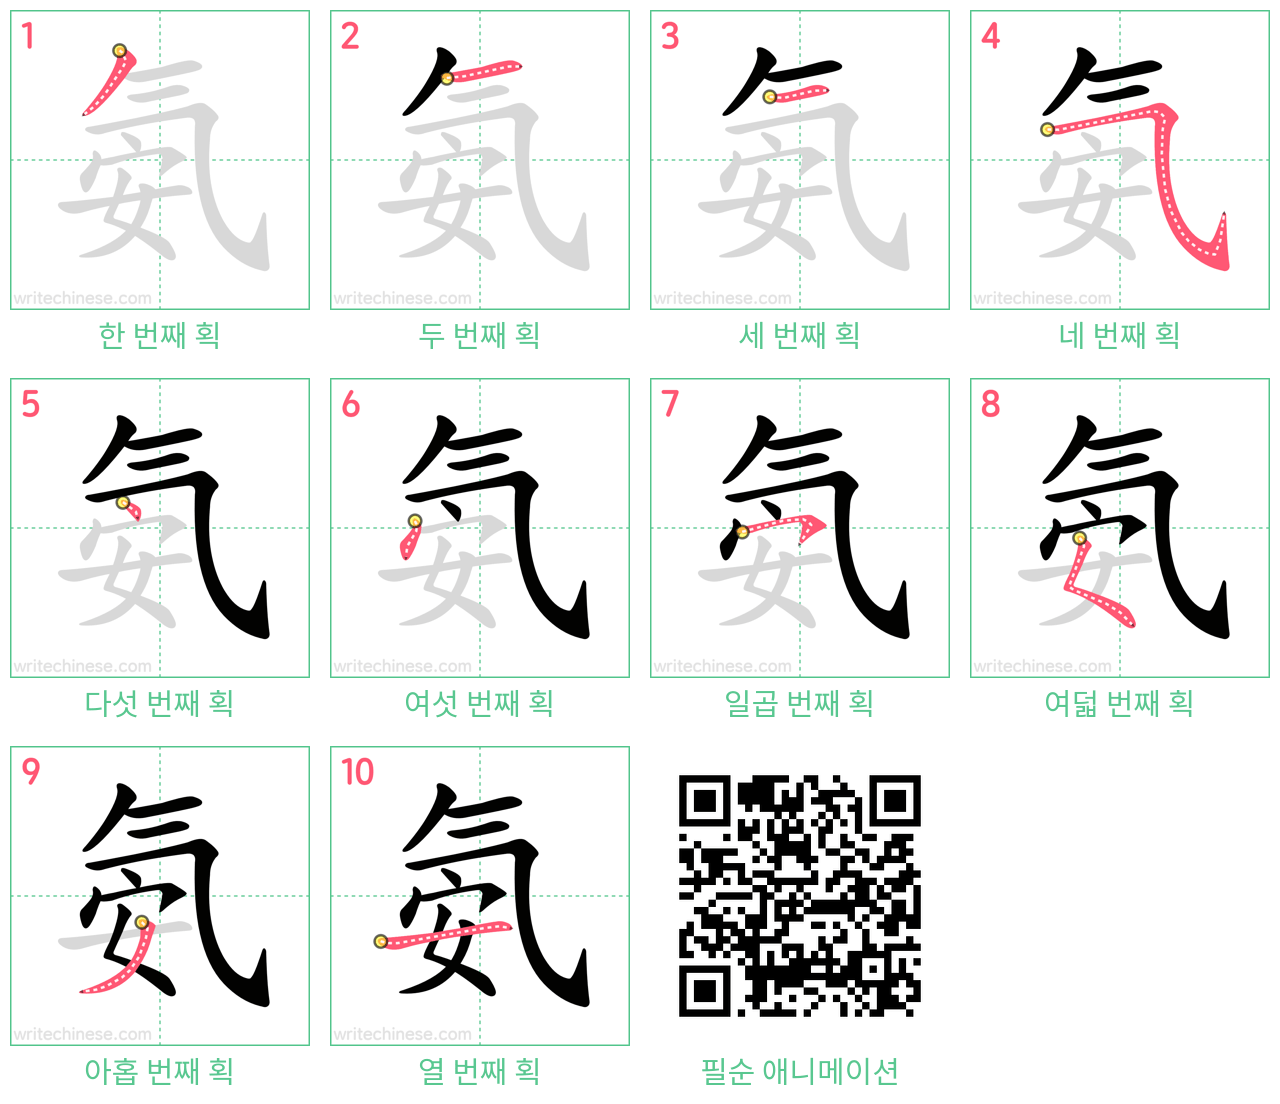 氨 step-by-step stroke order diagrams